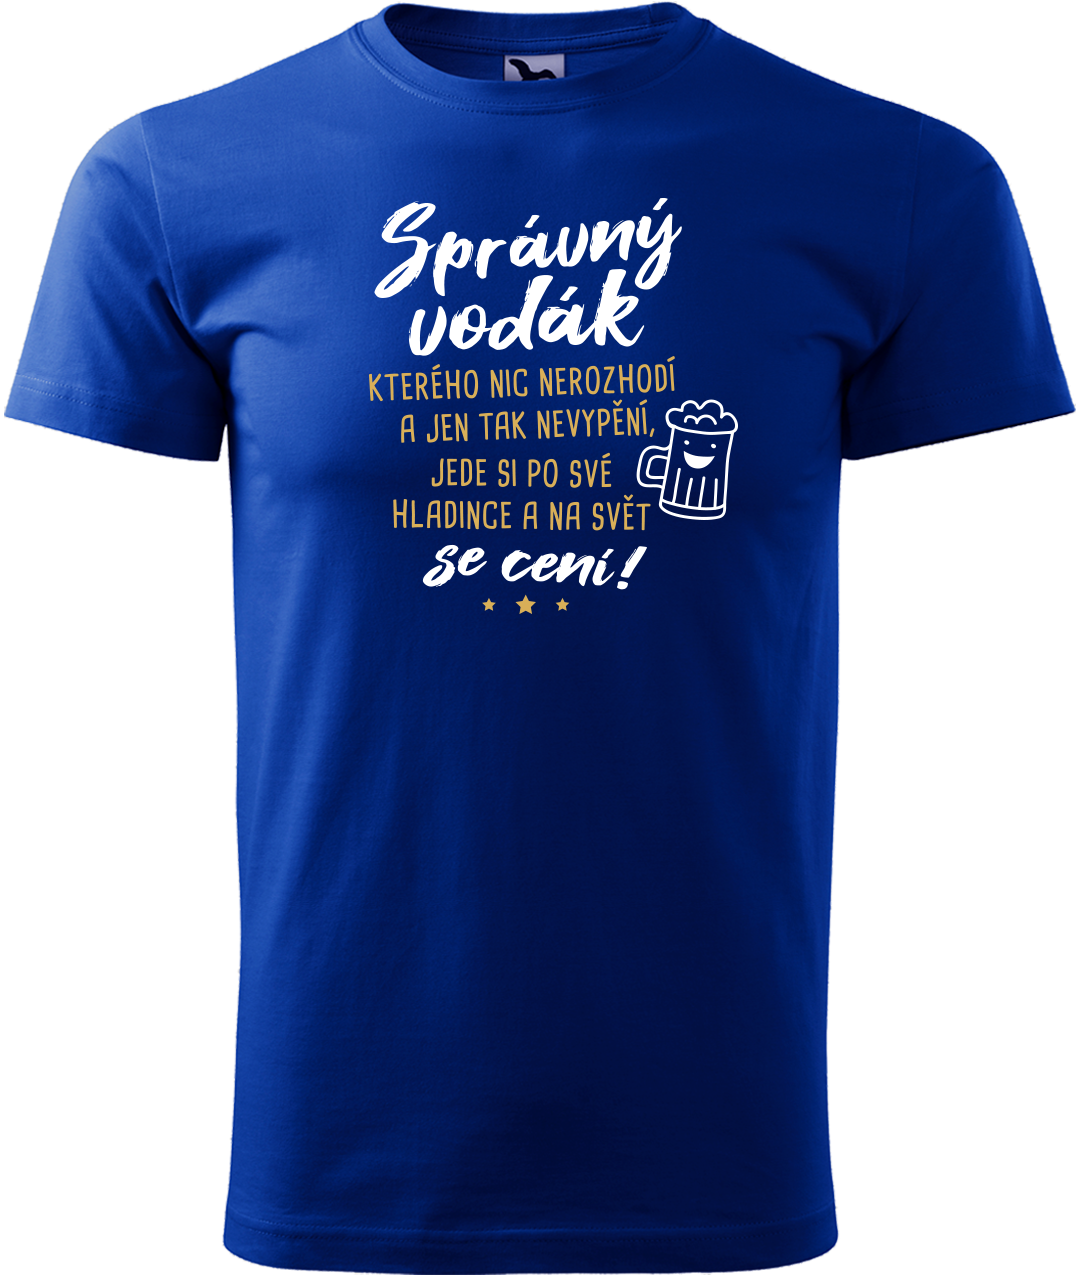 Pánské vodácké tričko - Správný vodák se cení Velikost: S, Barva: Královská modrá (05)